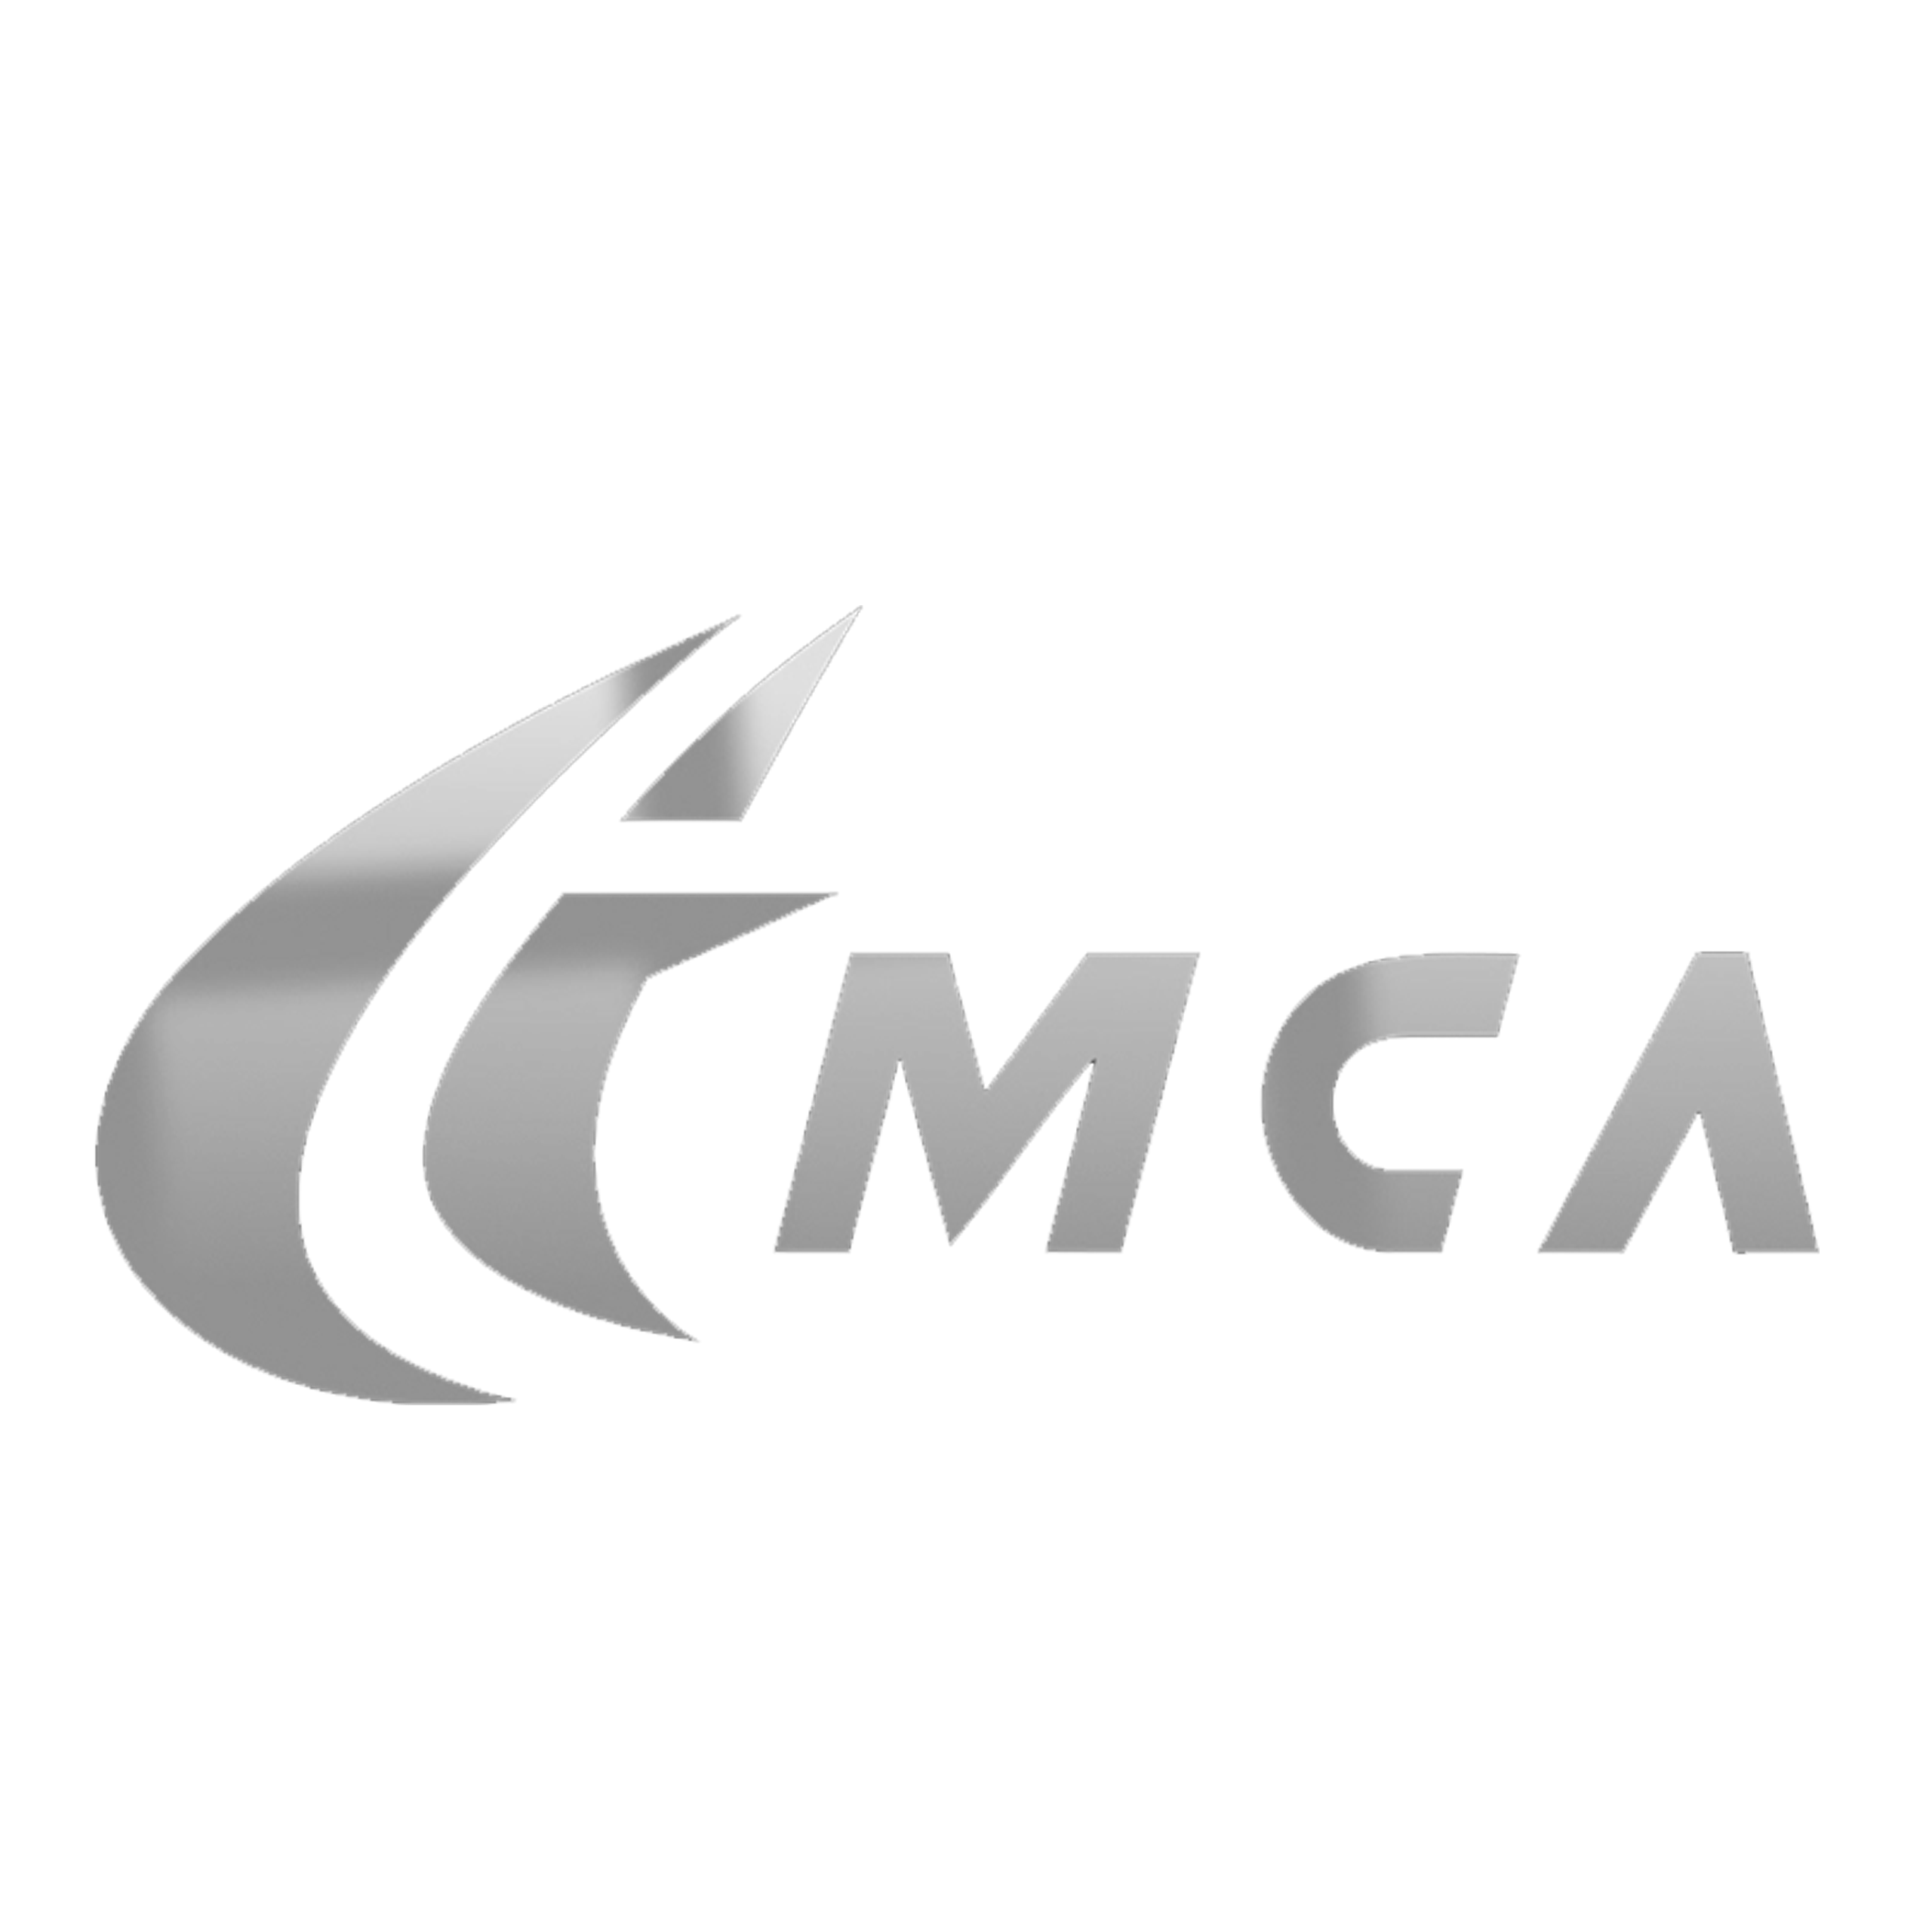 Miguel Cardona Mca Logo